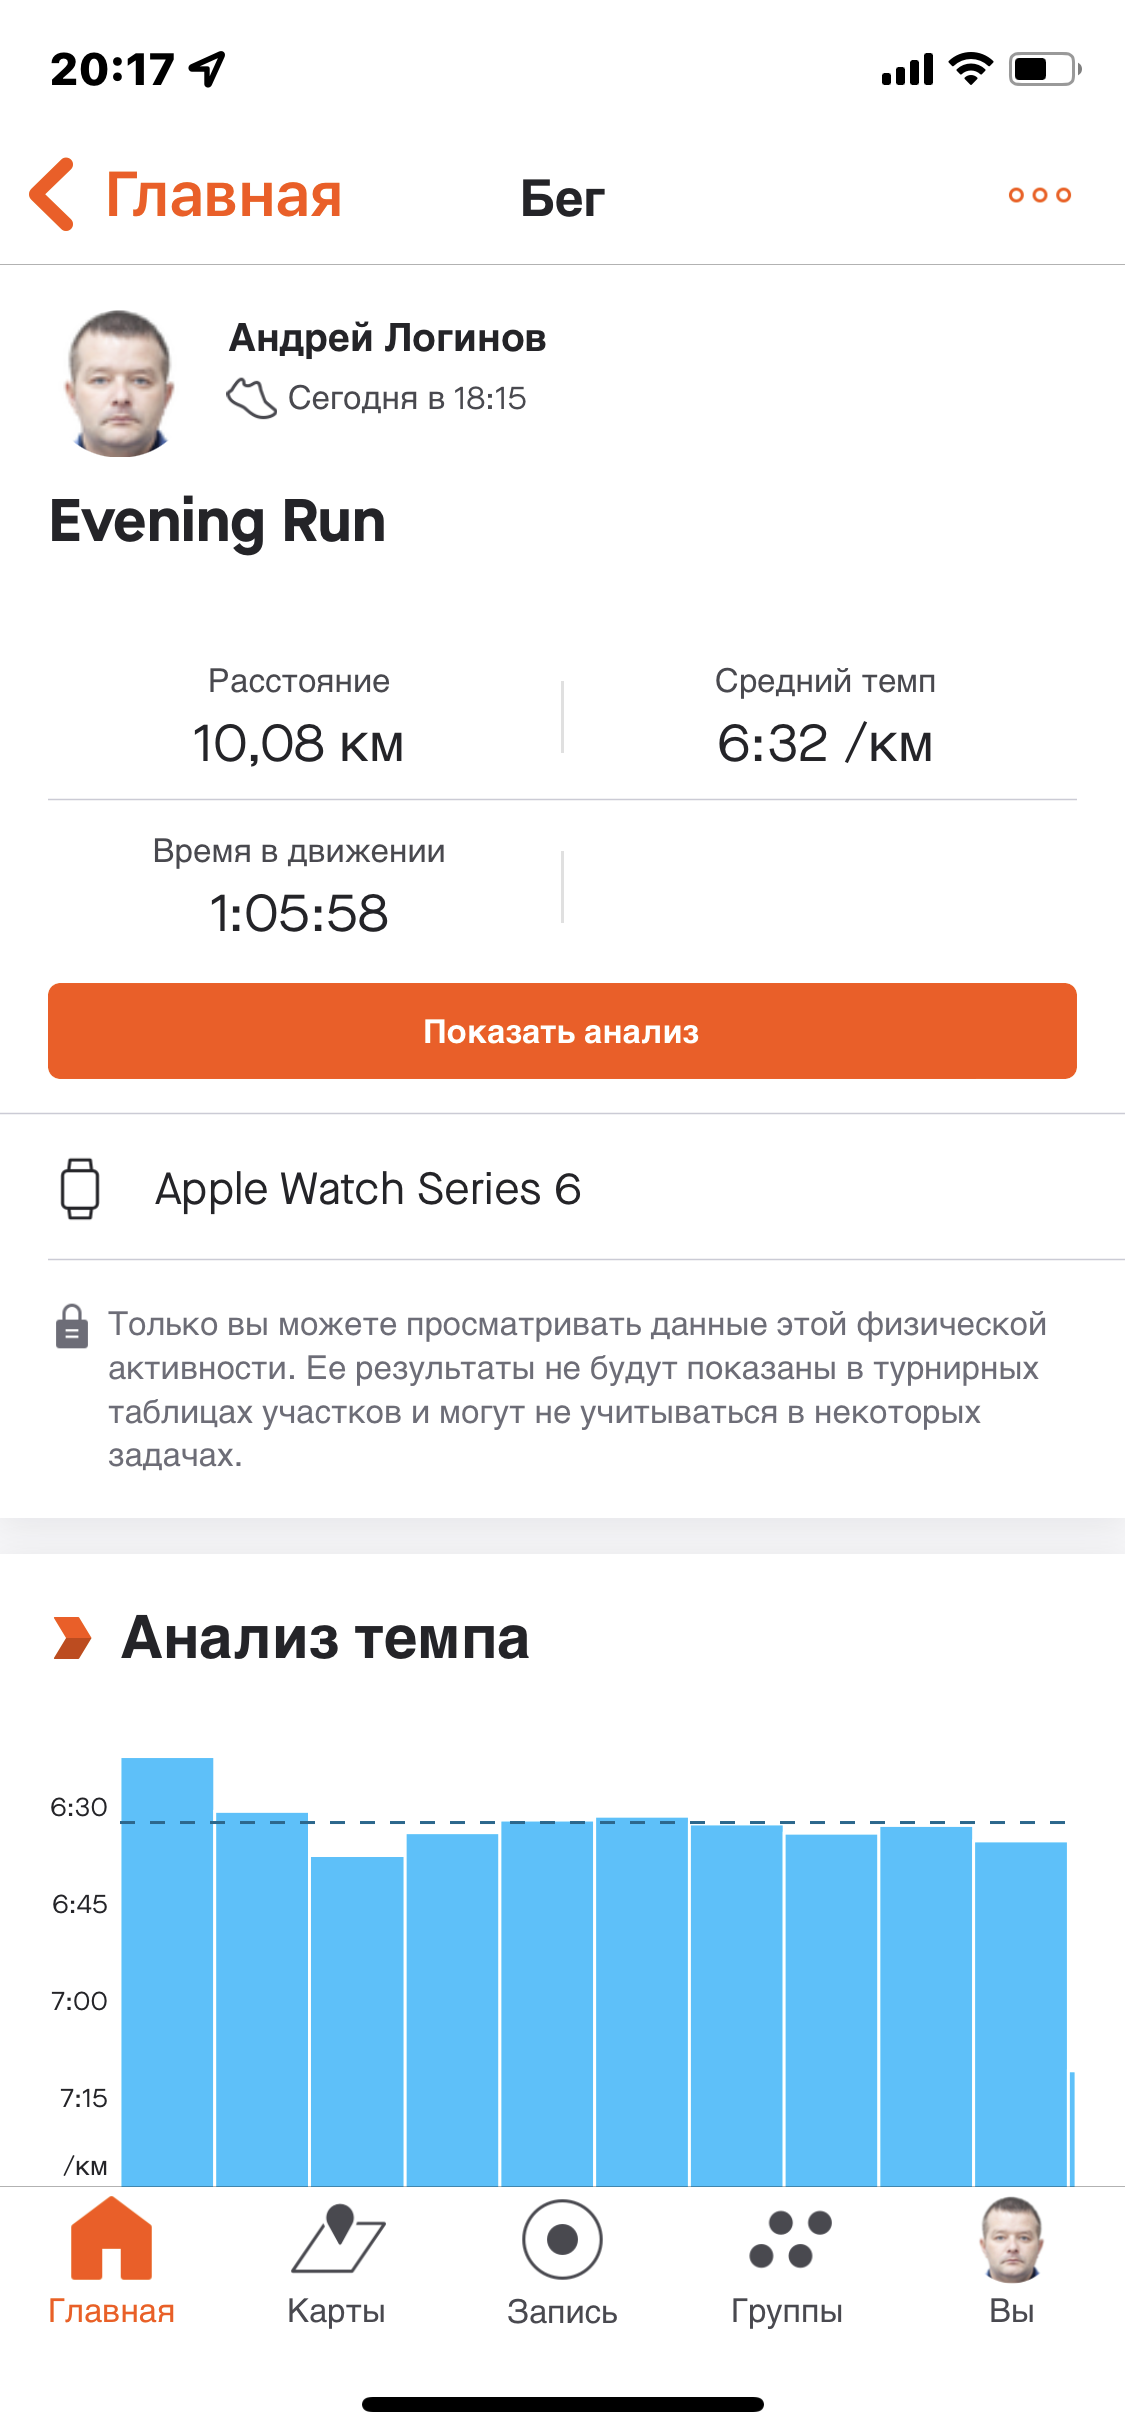  Загрузка от 01.05.2022 00:00:00 Логинов Андрей 